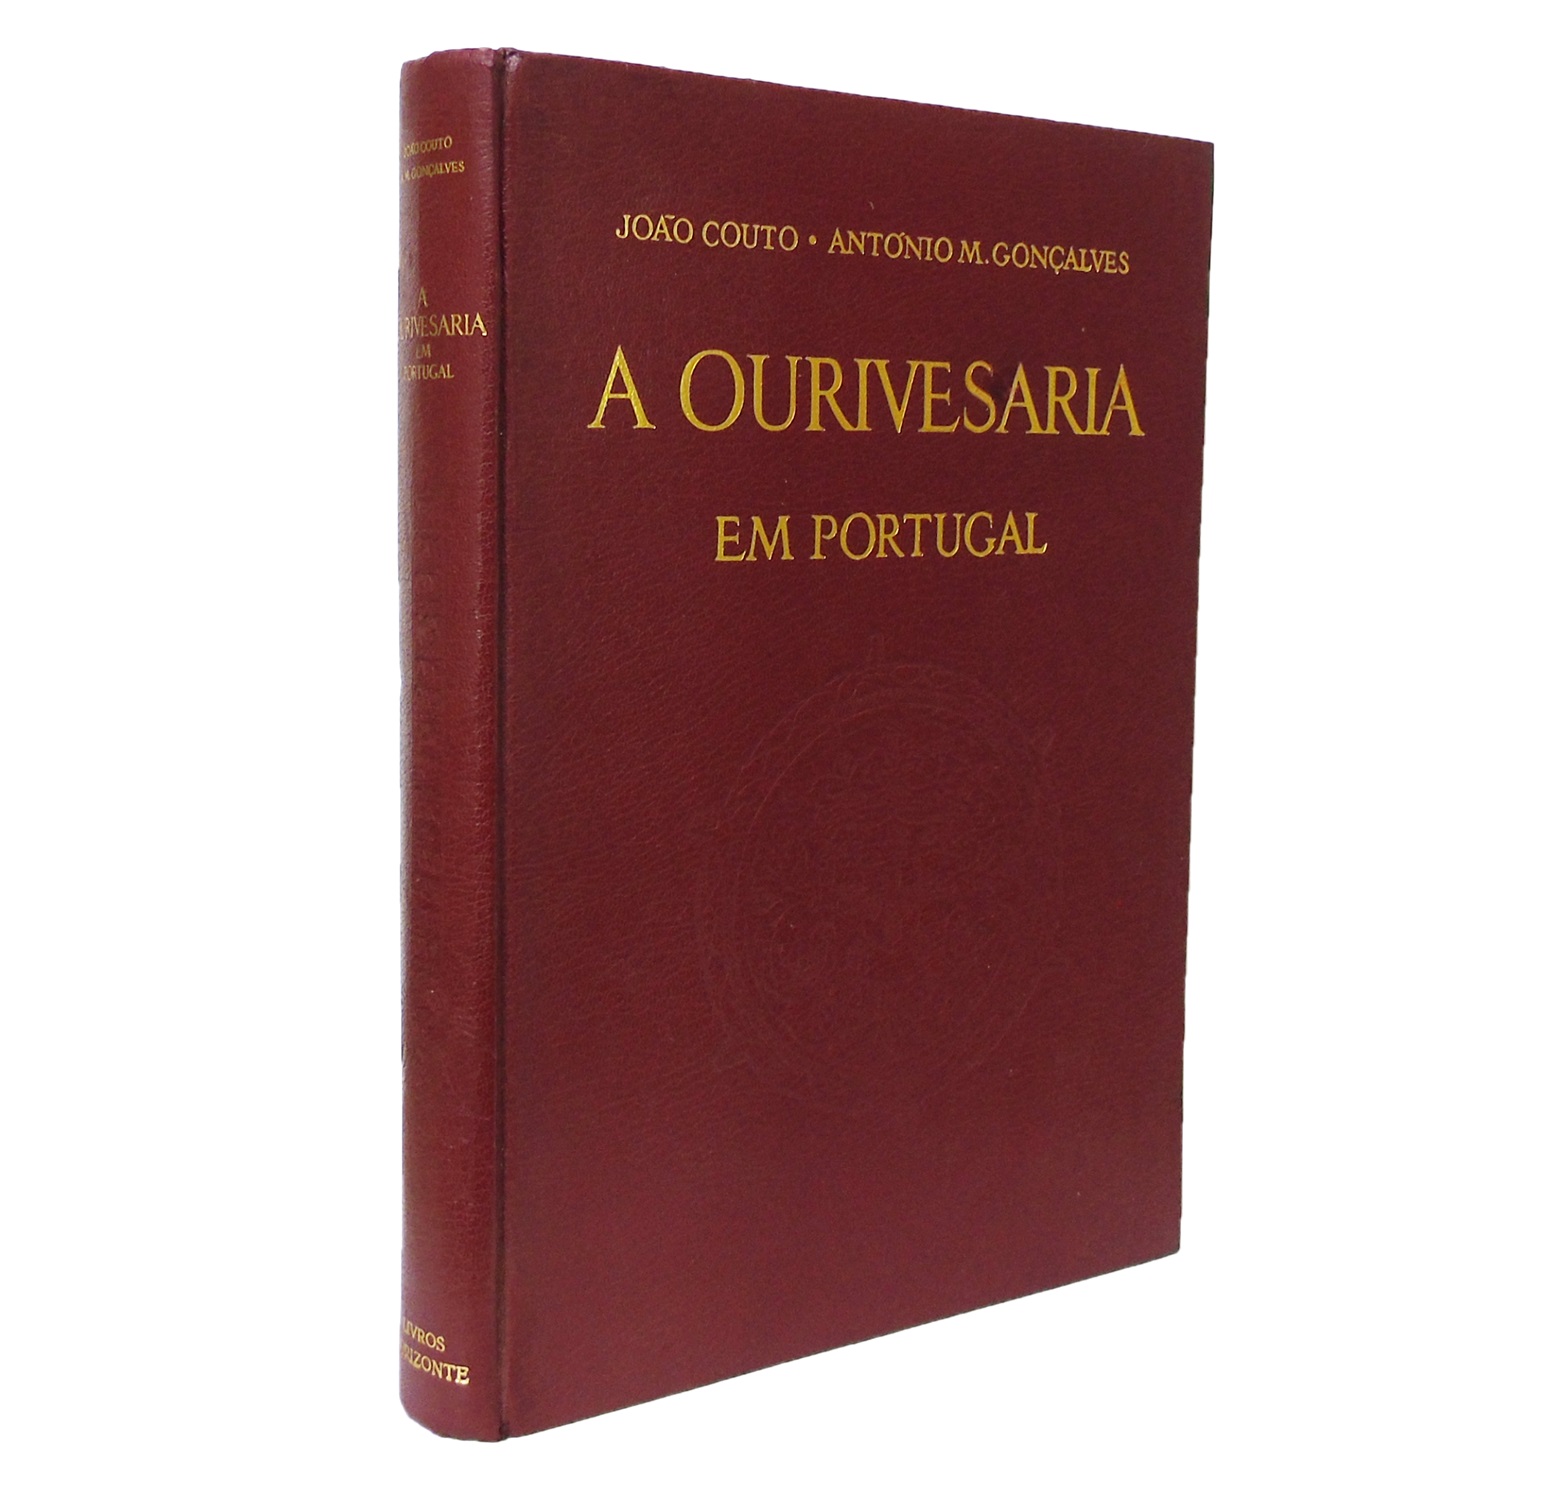 A OURIVESARIA EM PORTUGAL